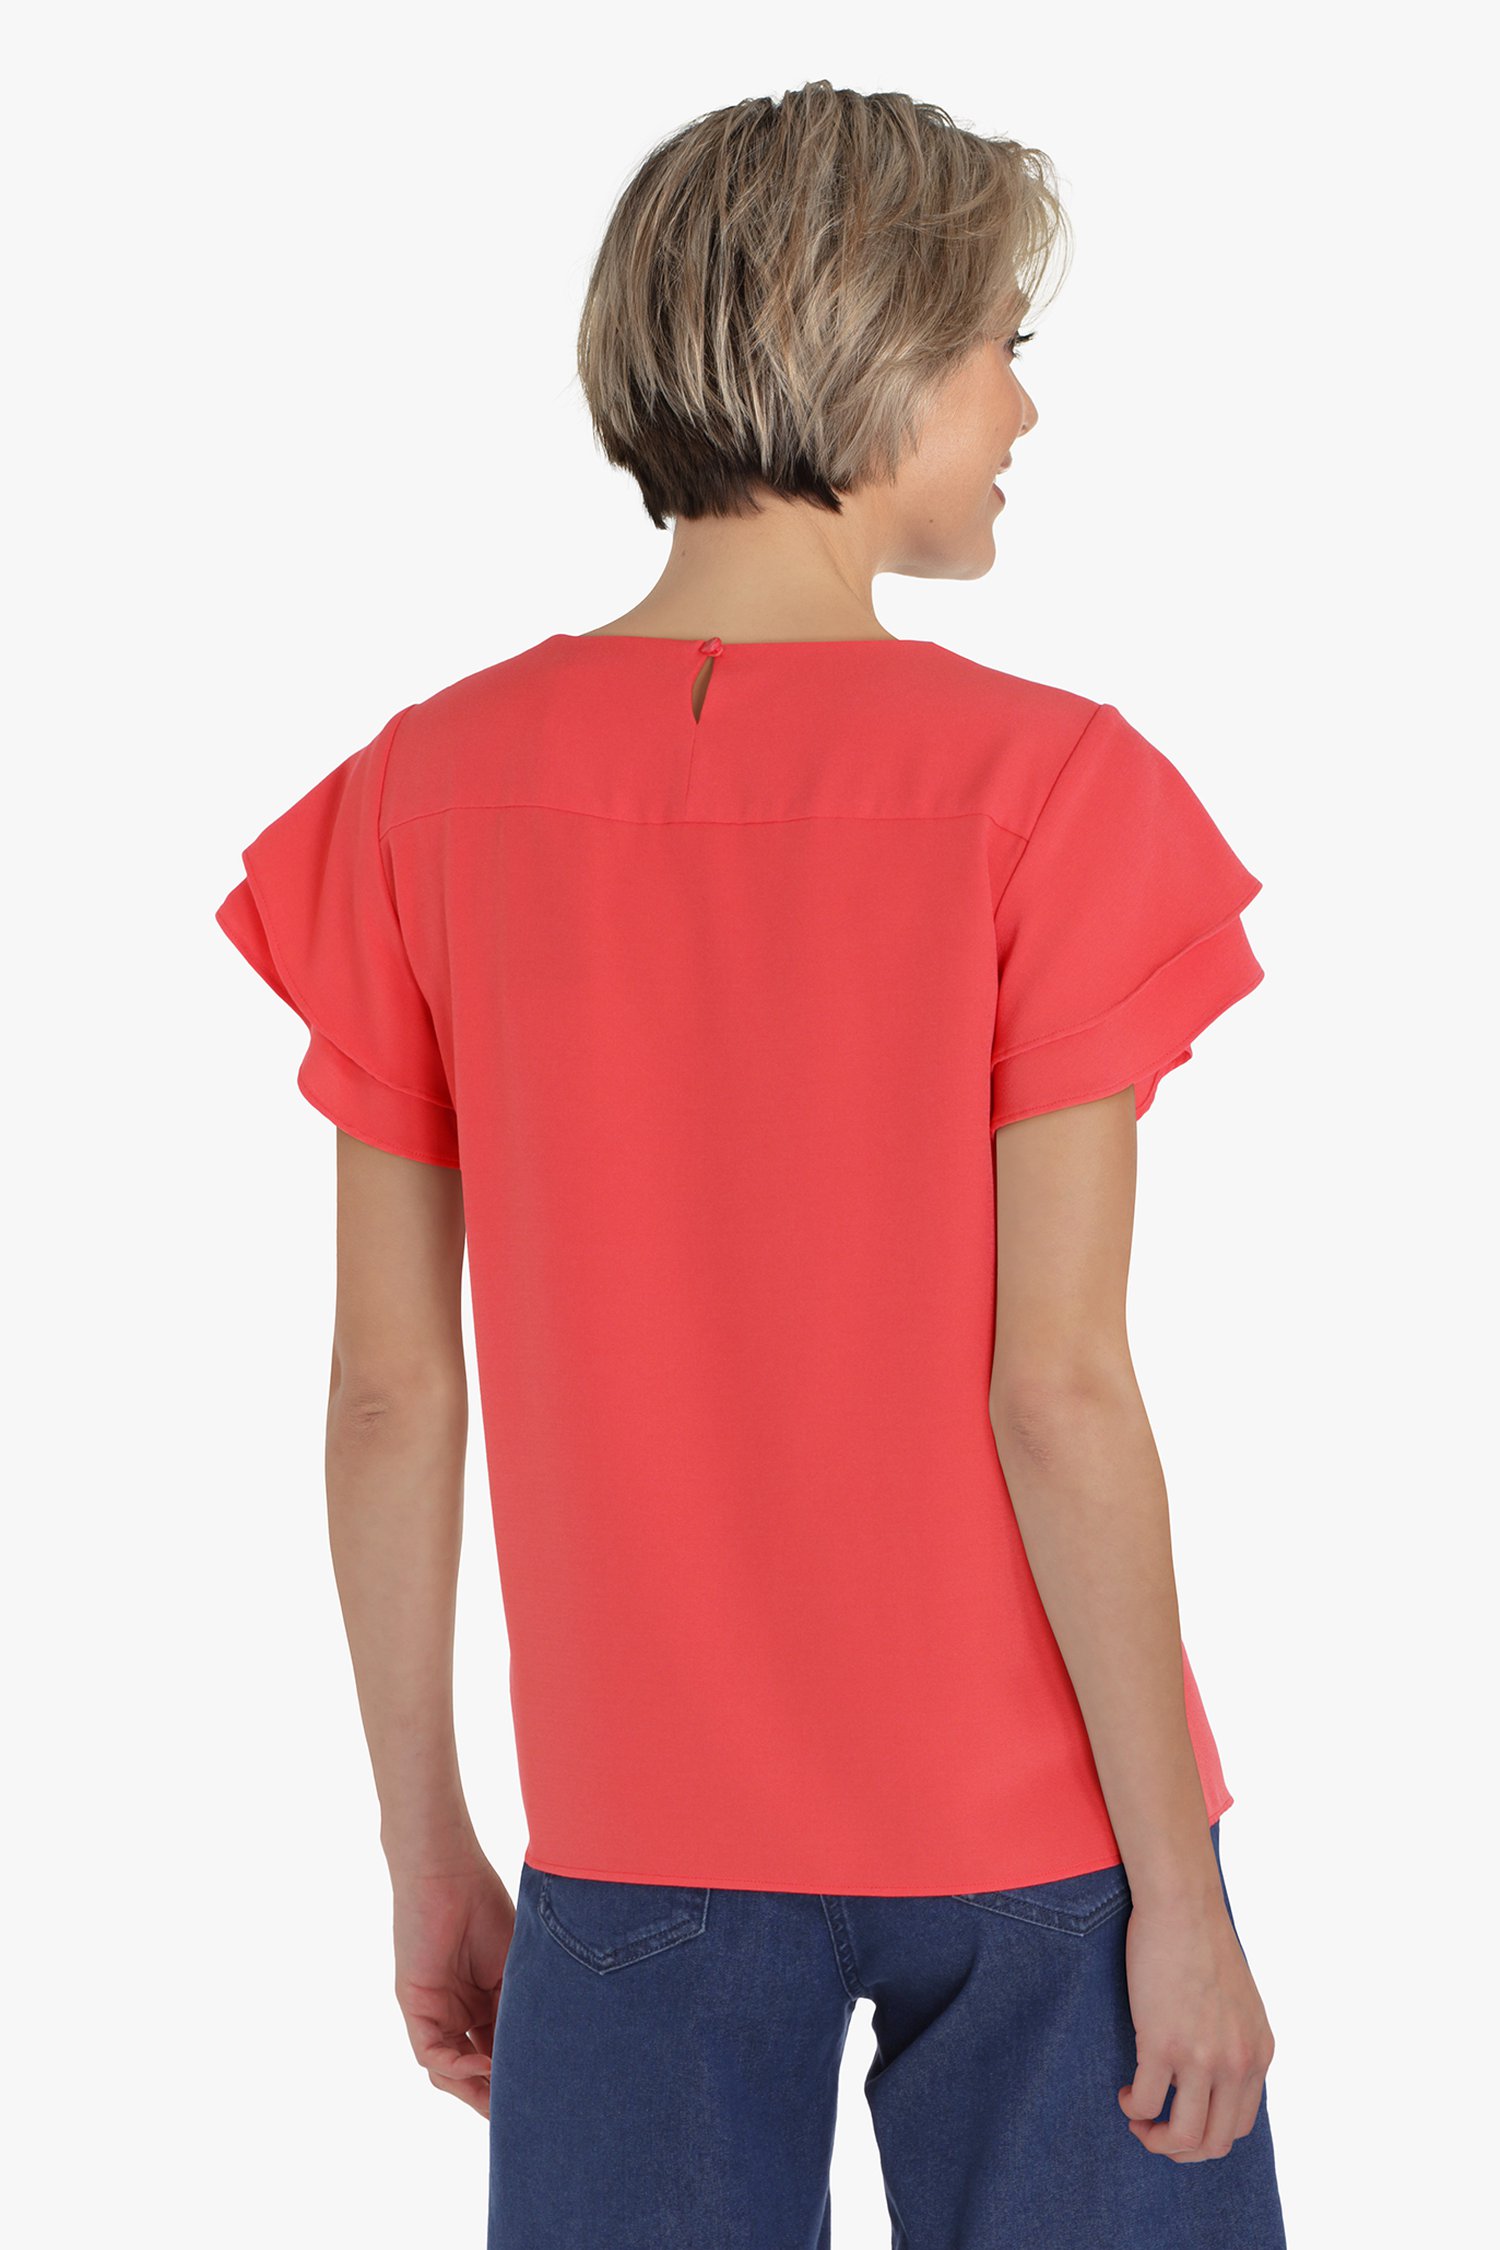 Roodroze blouse met vlindermouwen van Claude Arielle voor Dames